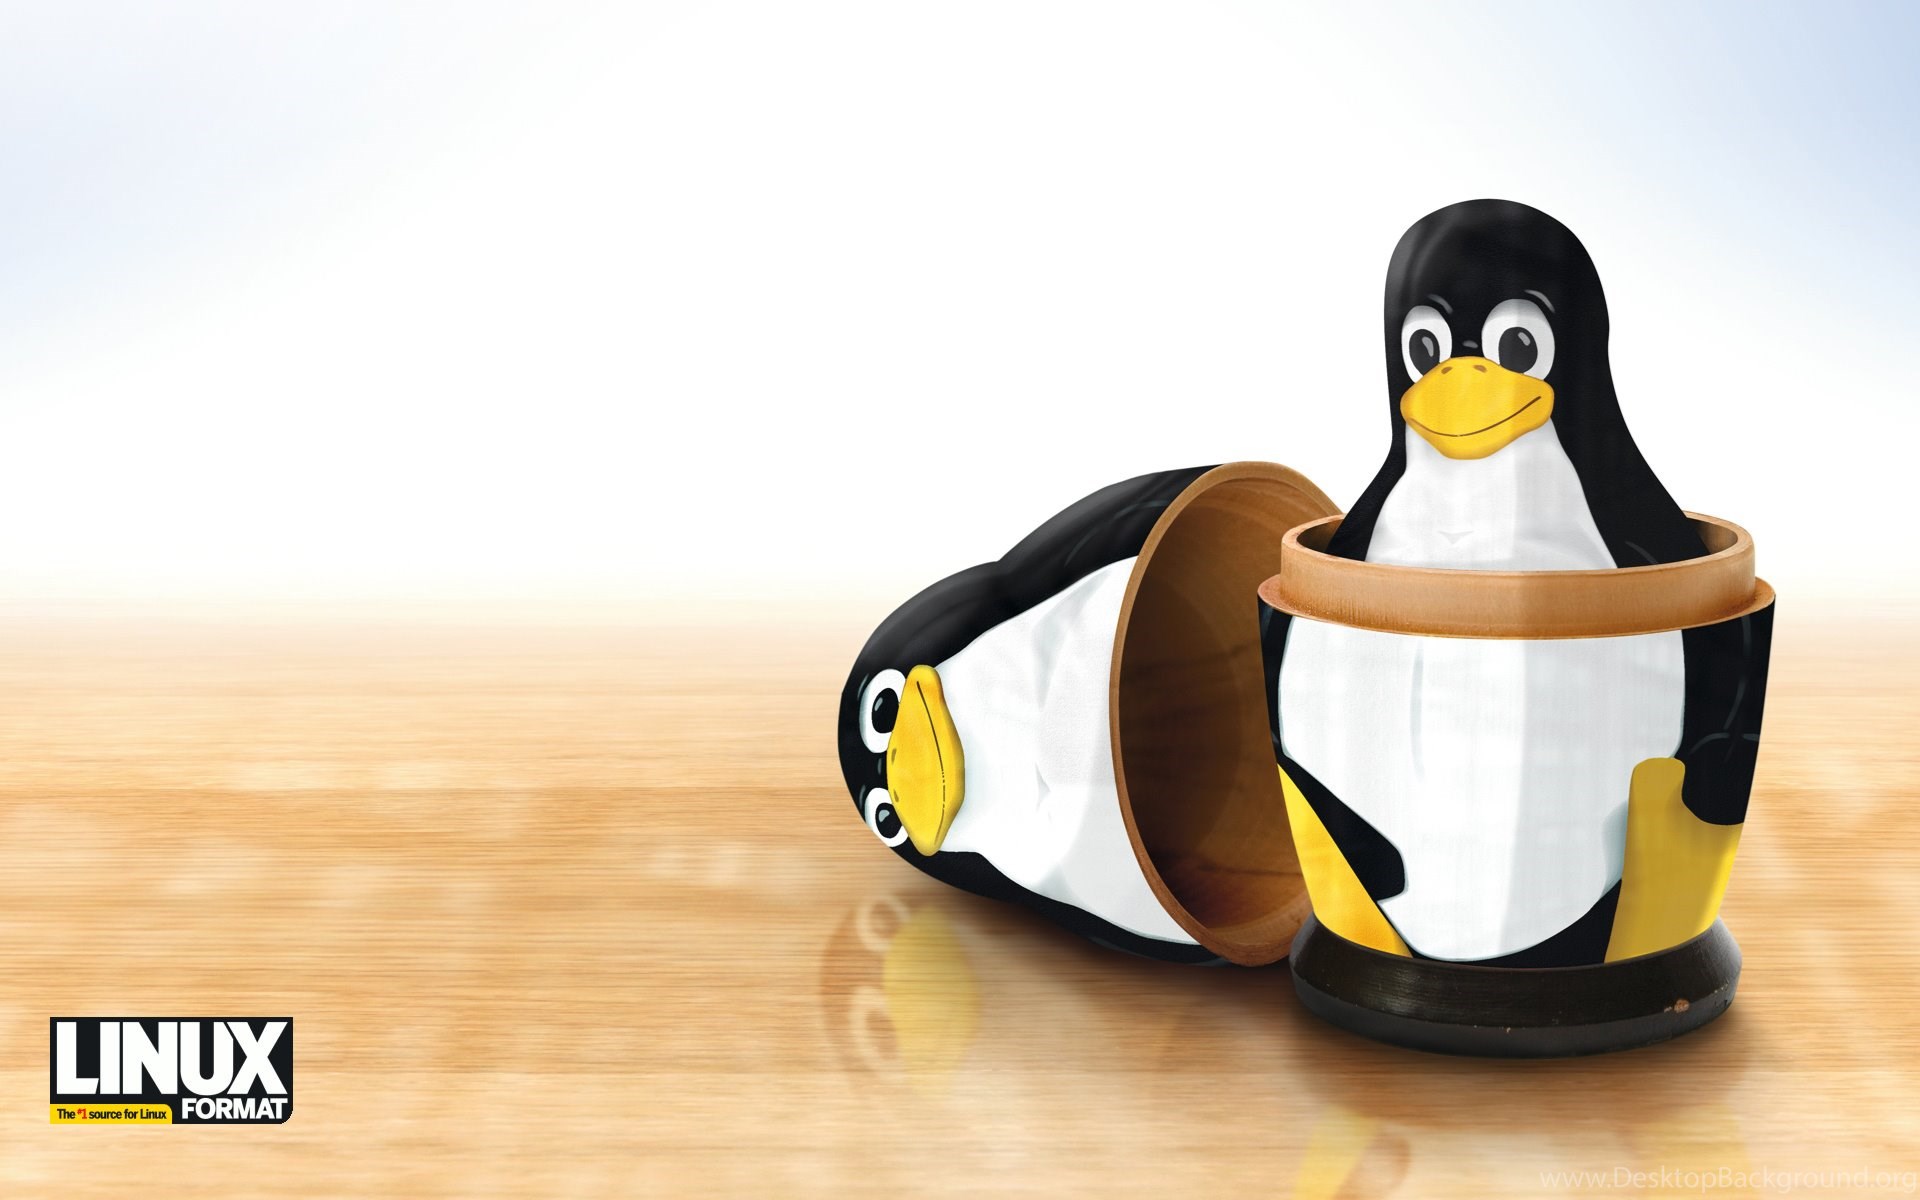 Balena linux. ОС Linux Пингвин. Линукс системы Пингвин. Пингвины Windows. Пингвин линукс игра.